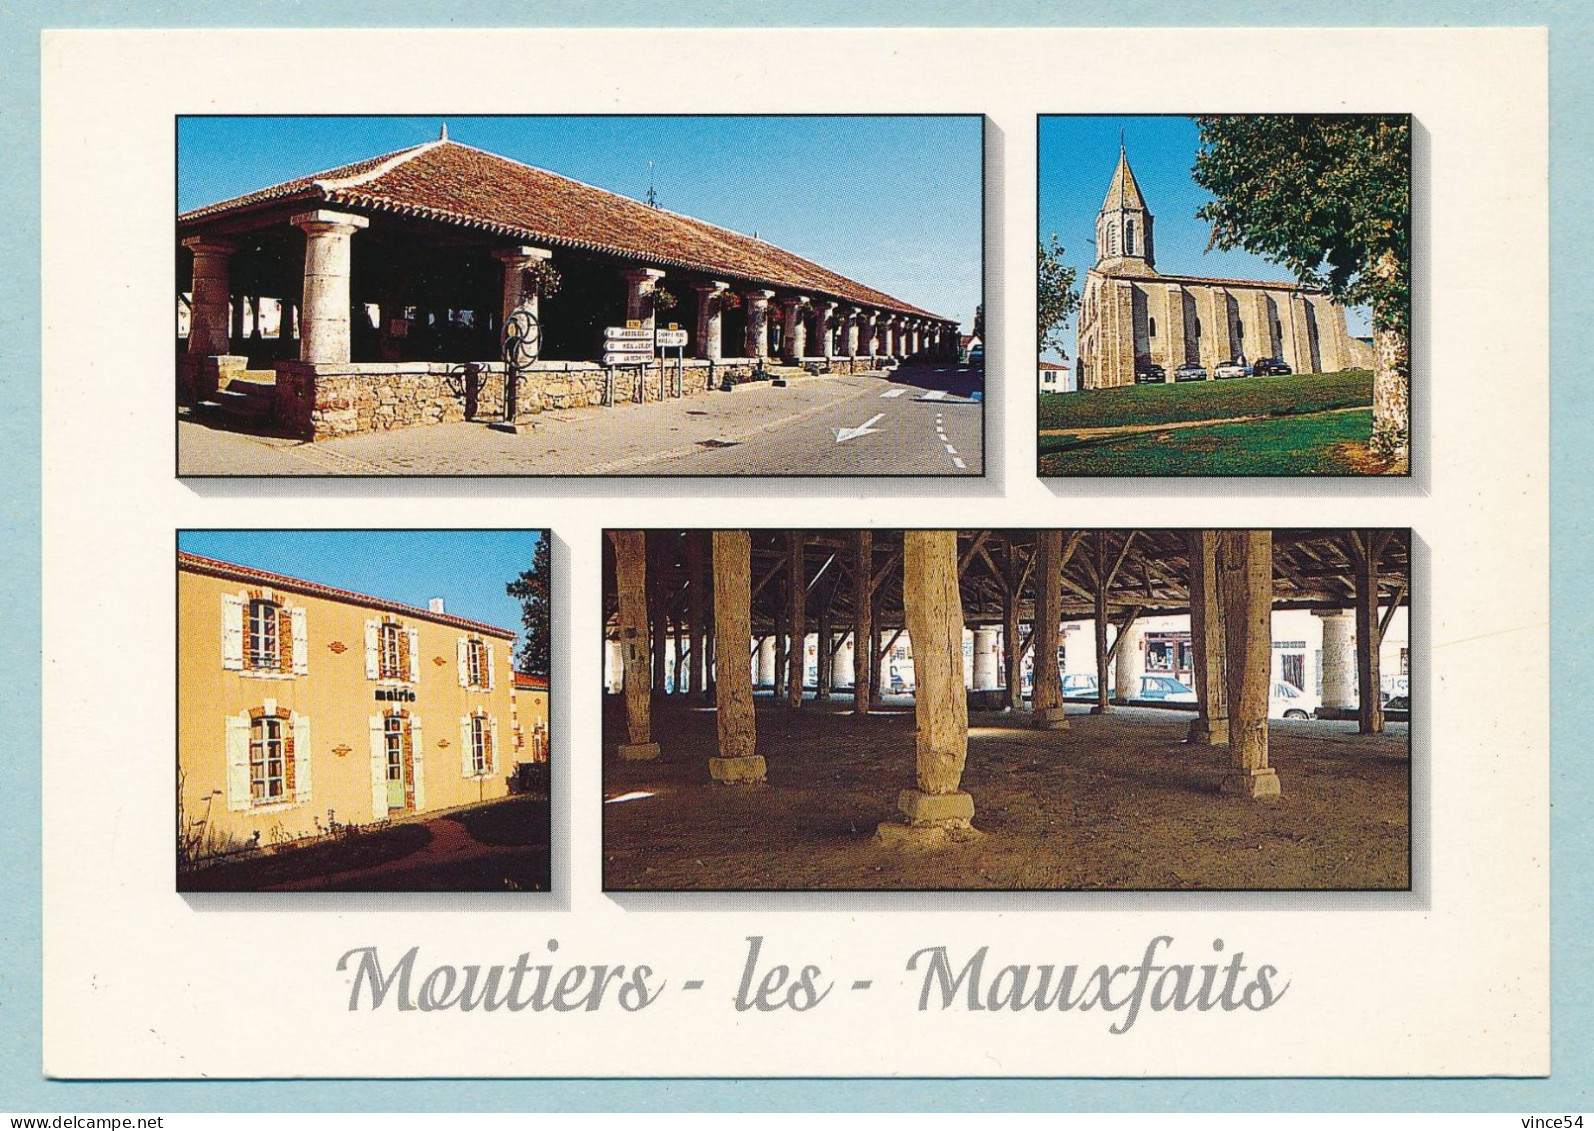 MOUTIERS-LES-MAUXFAITS - Multivues - Moutiers Les Mauxfaits